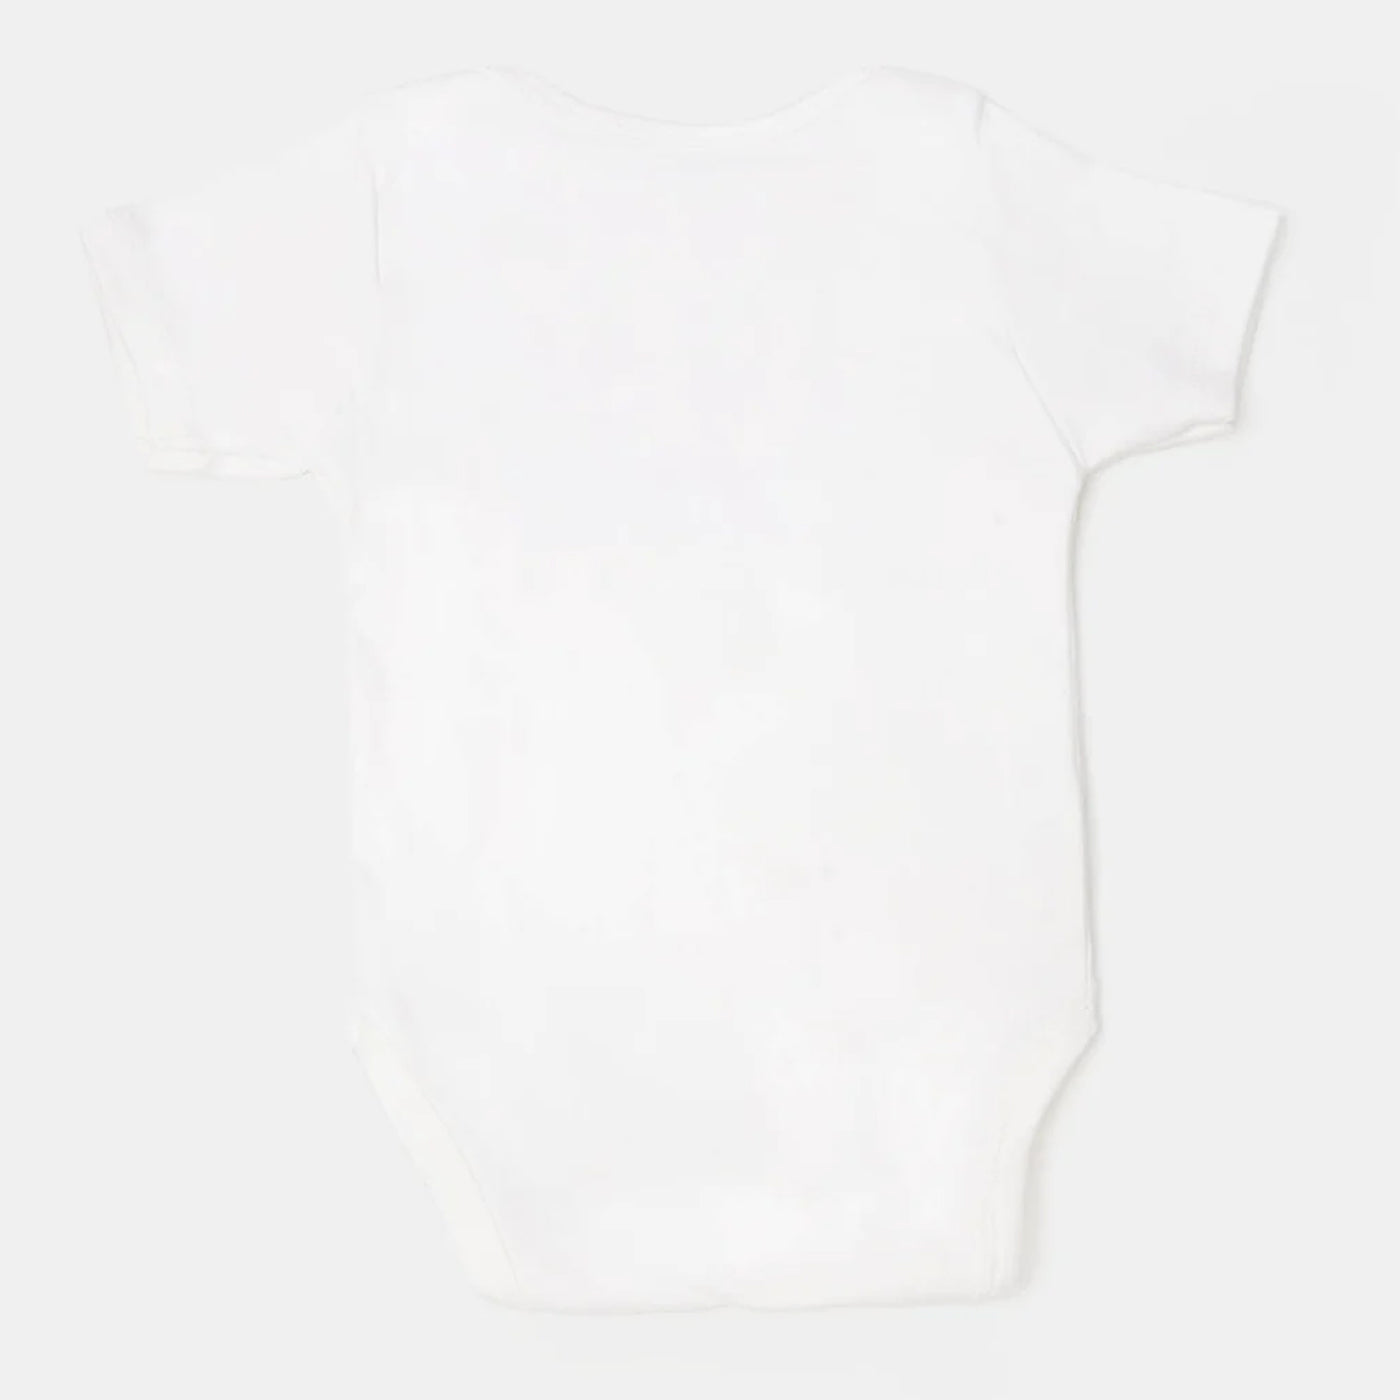 Infant Unisex Cotton Romper 3Pcs - White